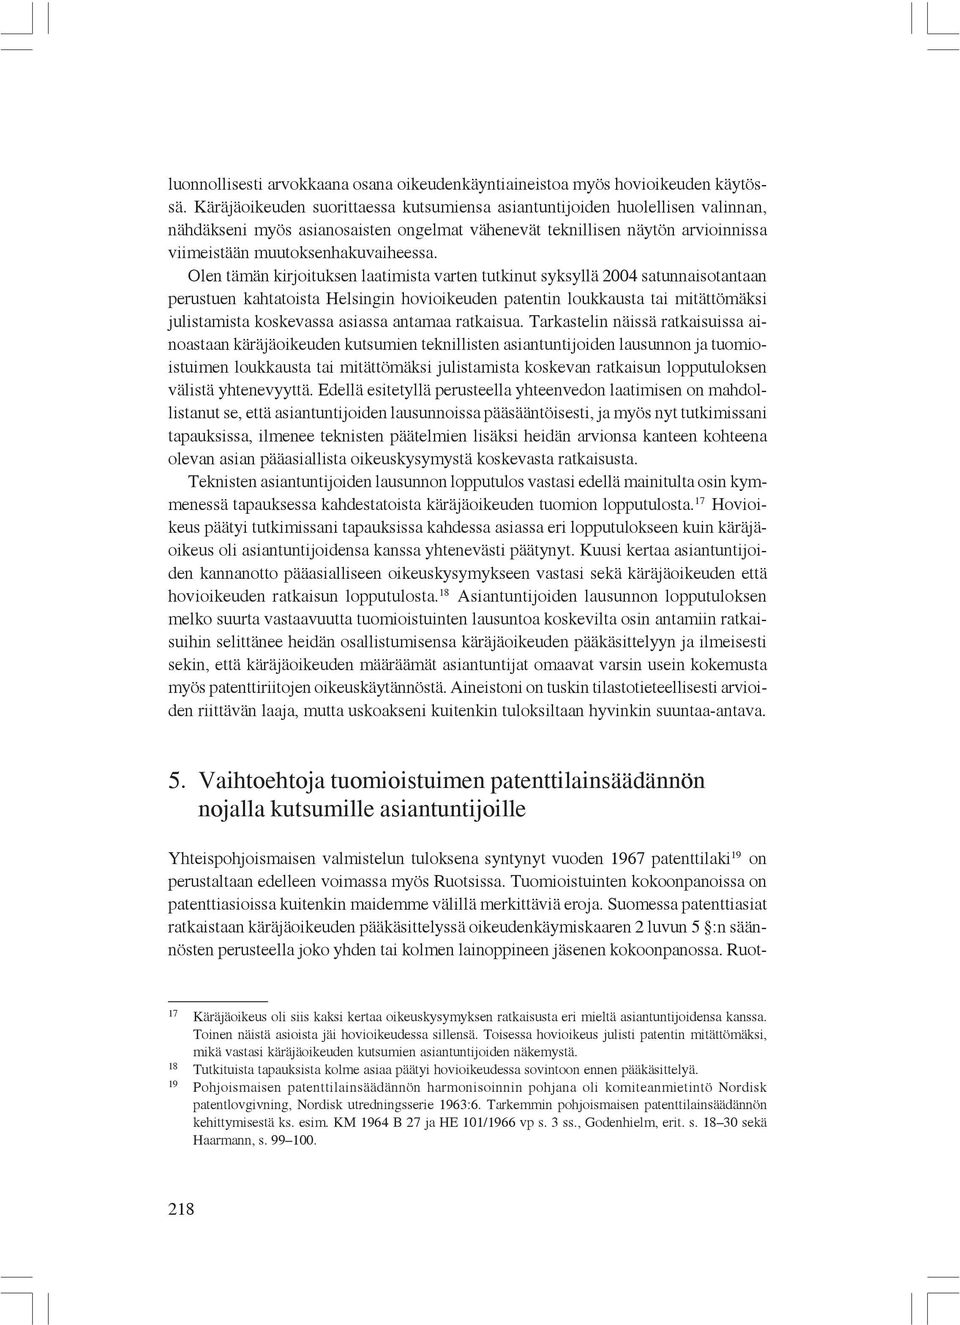 Olen tämän kirjoituksen laatimista varten tutkinut syksyllä 2004 satunnaisotantaan perustuen kahtatoista Helsingin hovioikeuden patentin loukkausta tai mitättömäksi julistamista koskevassa asiassa